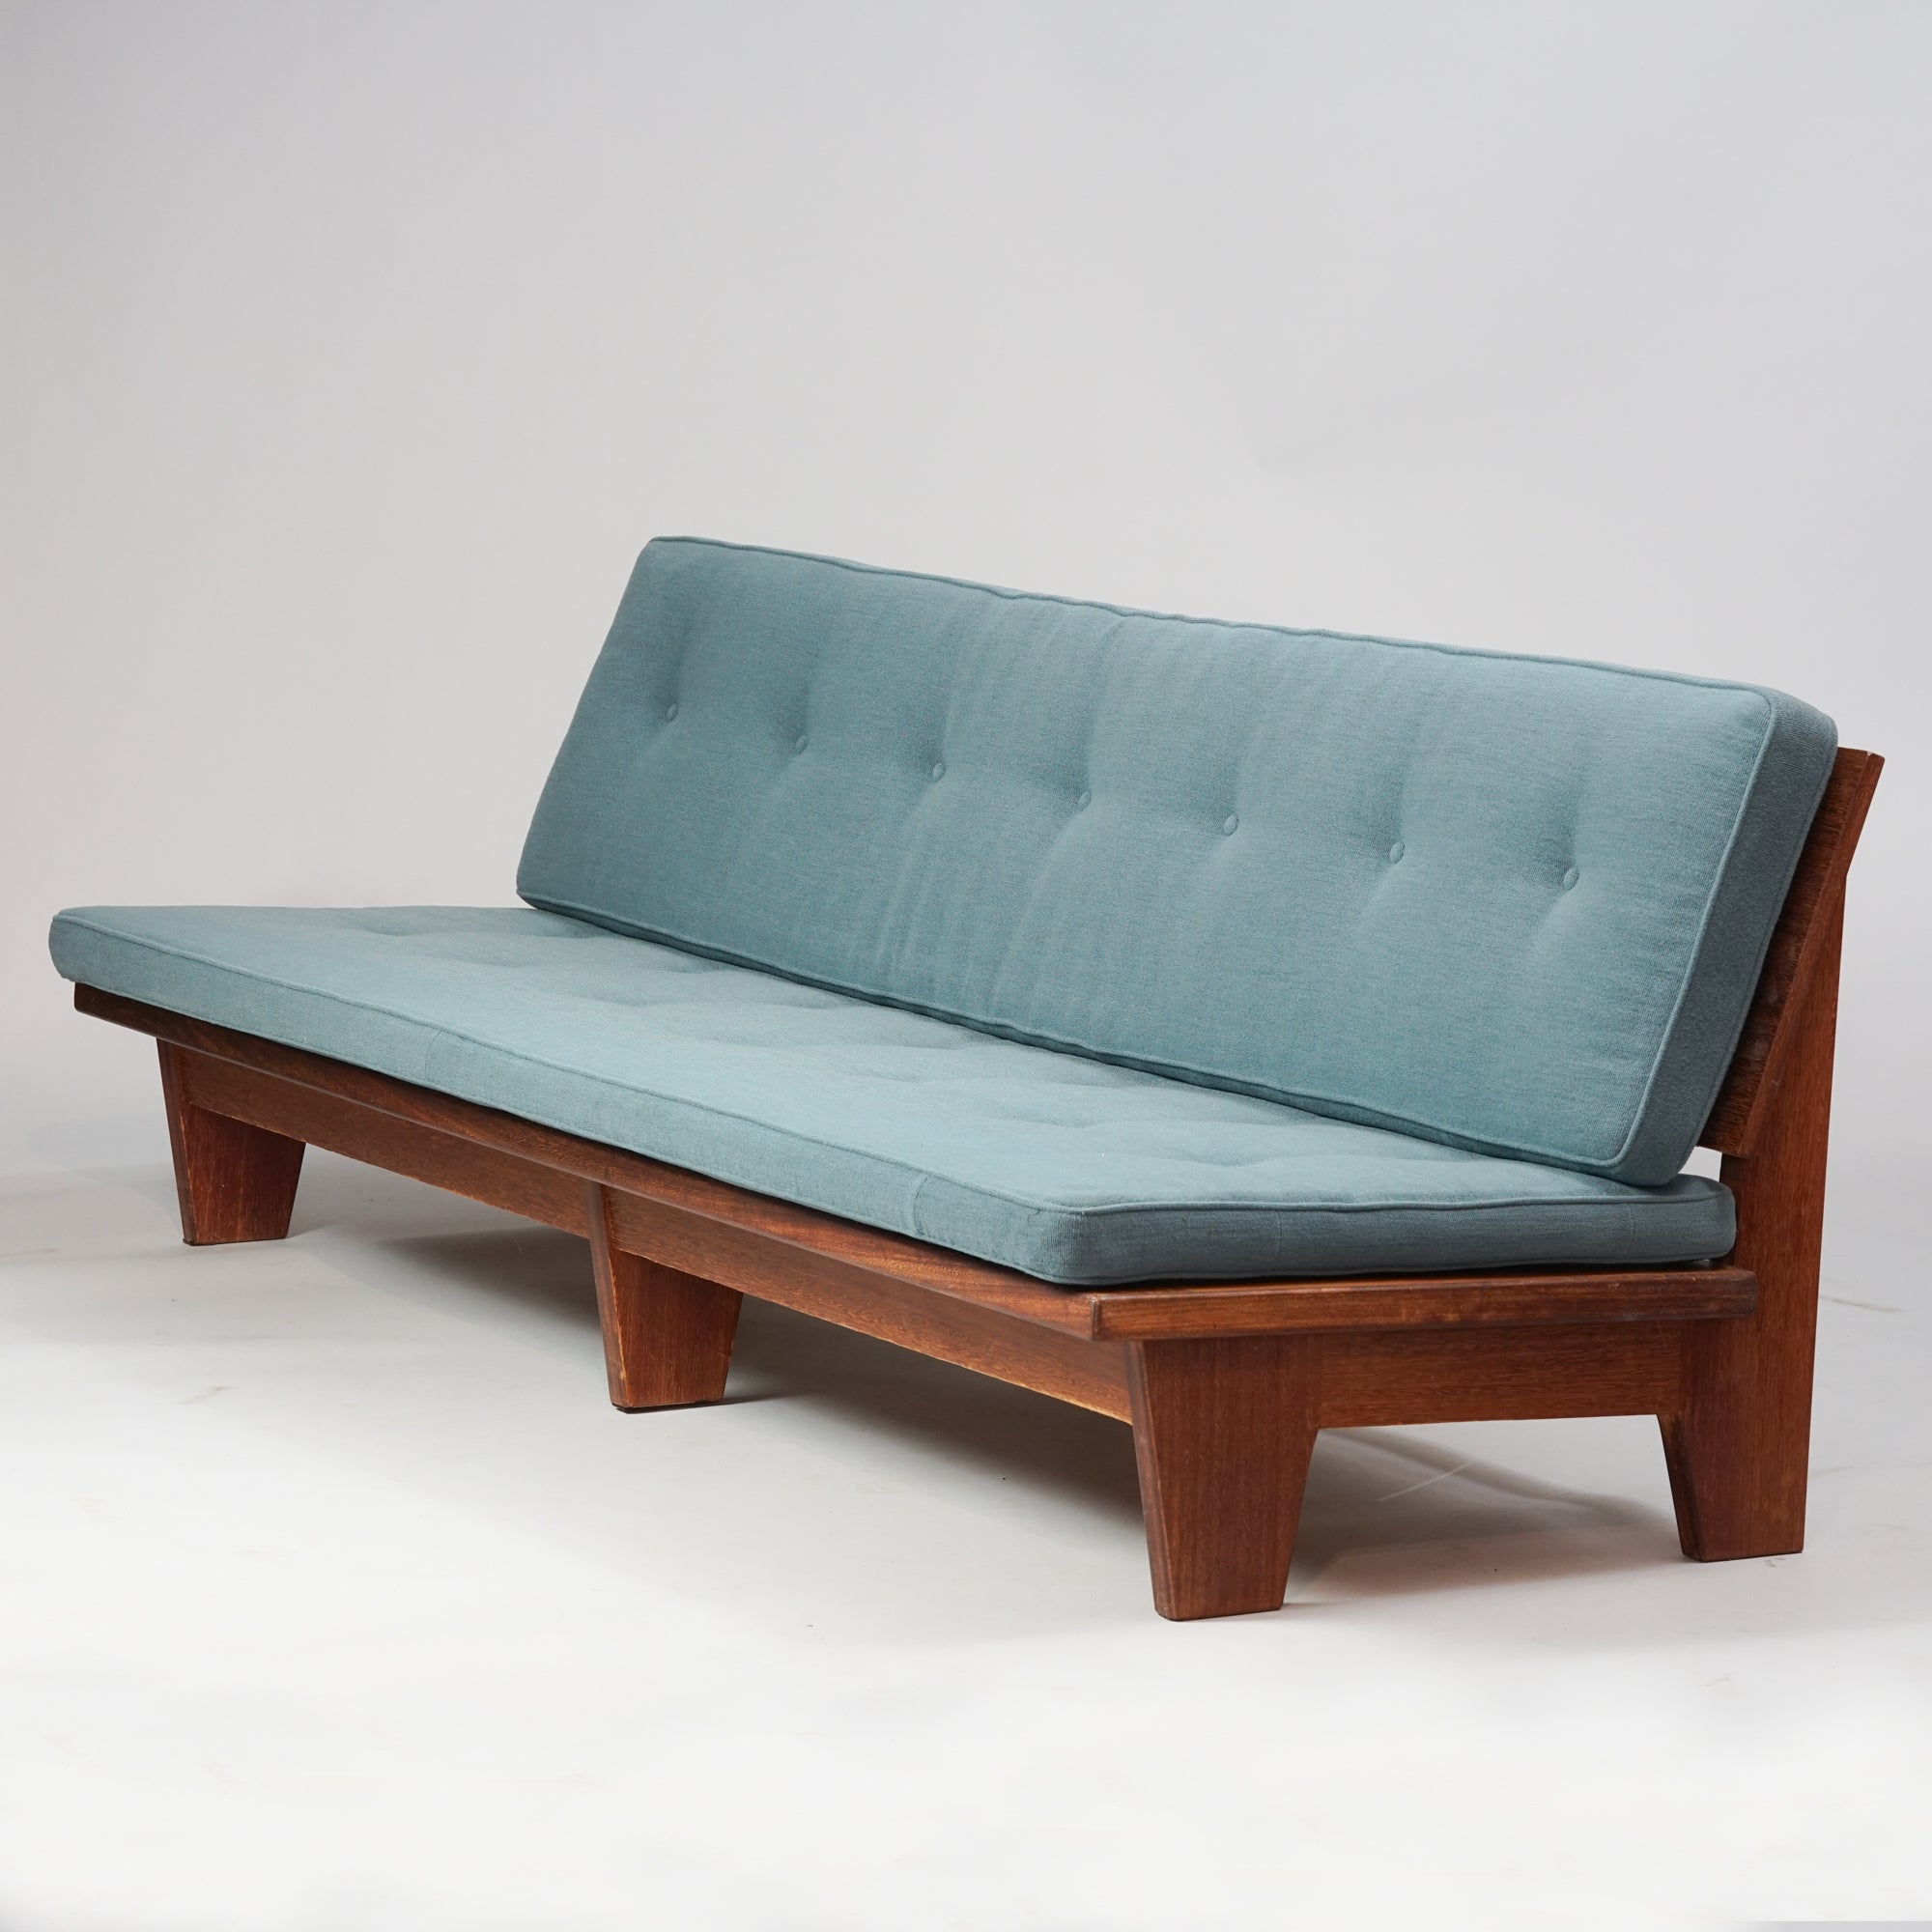 Pitkä sohva, jonka runko tiikkiä ja harmahtavan sininen istuinosa villakangasta.